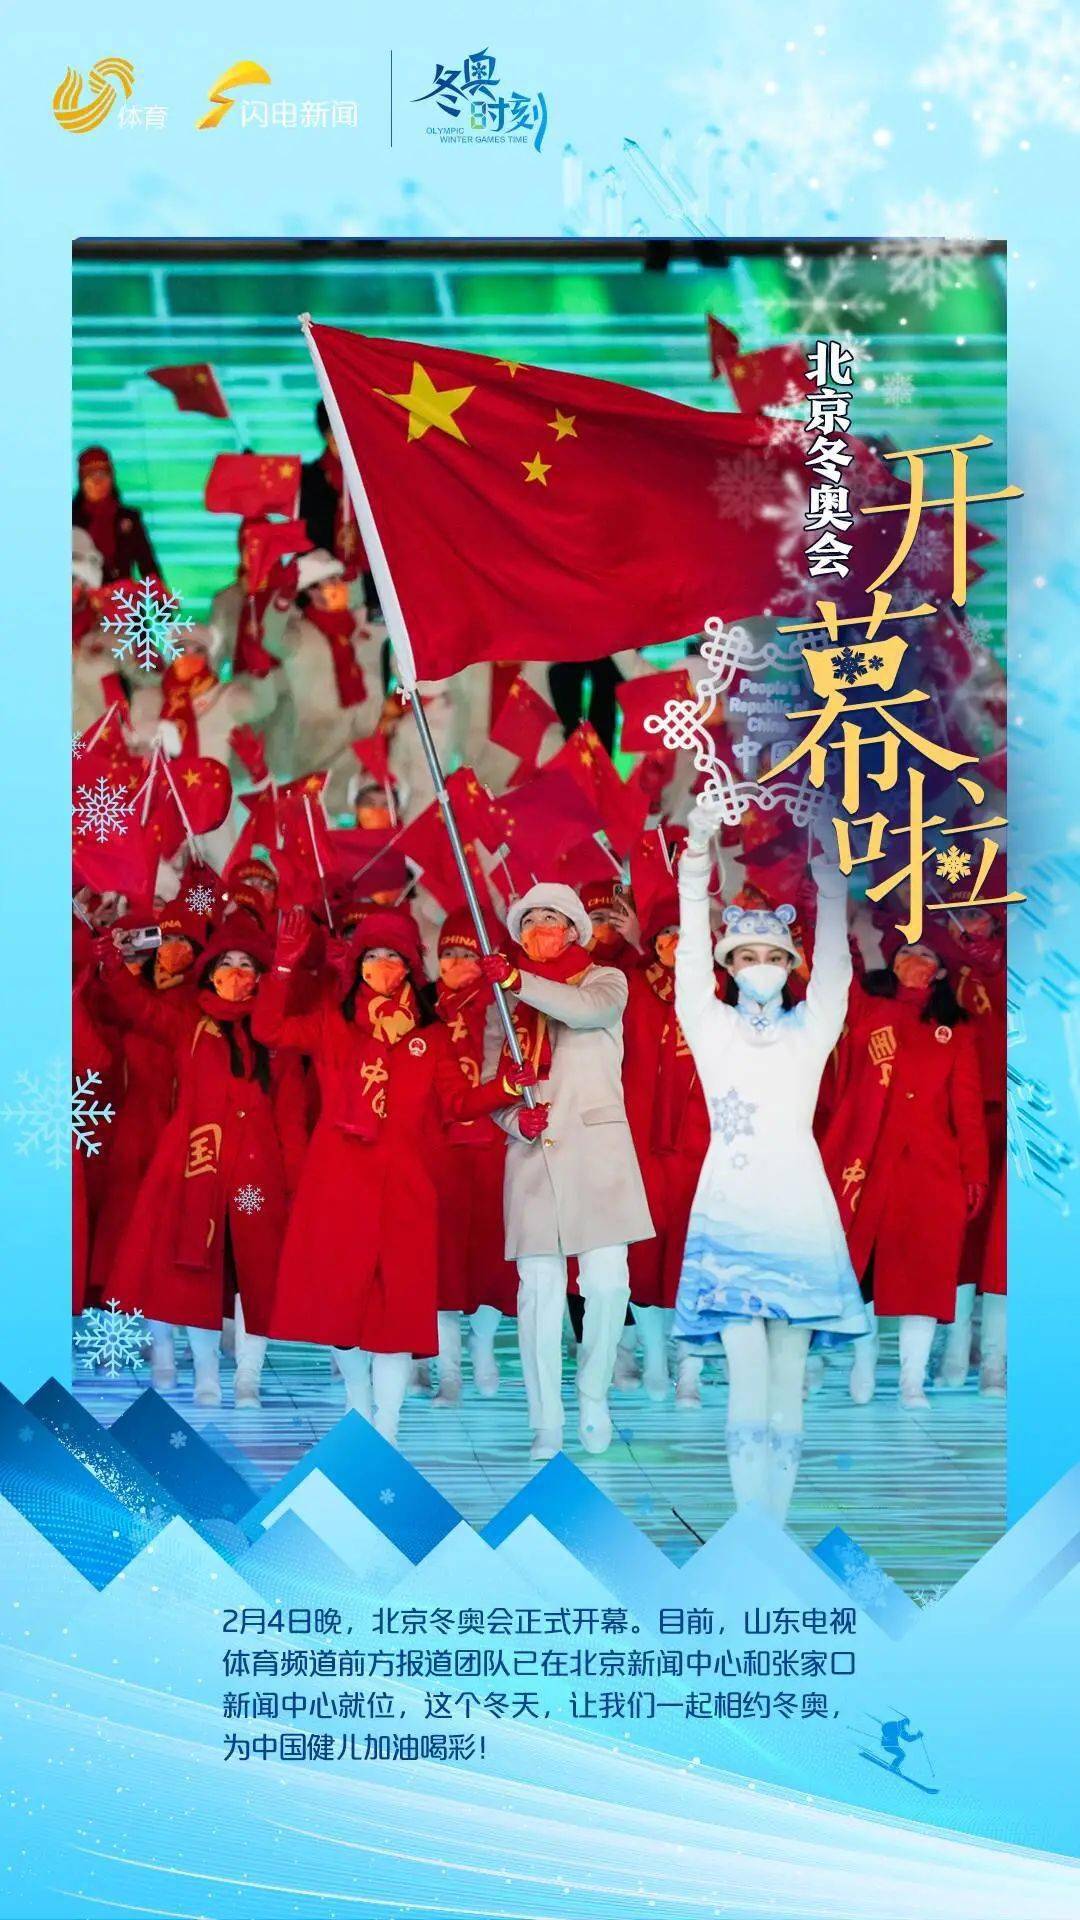 北京冬奥开幕式立春图片